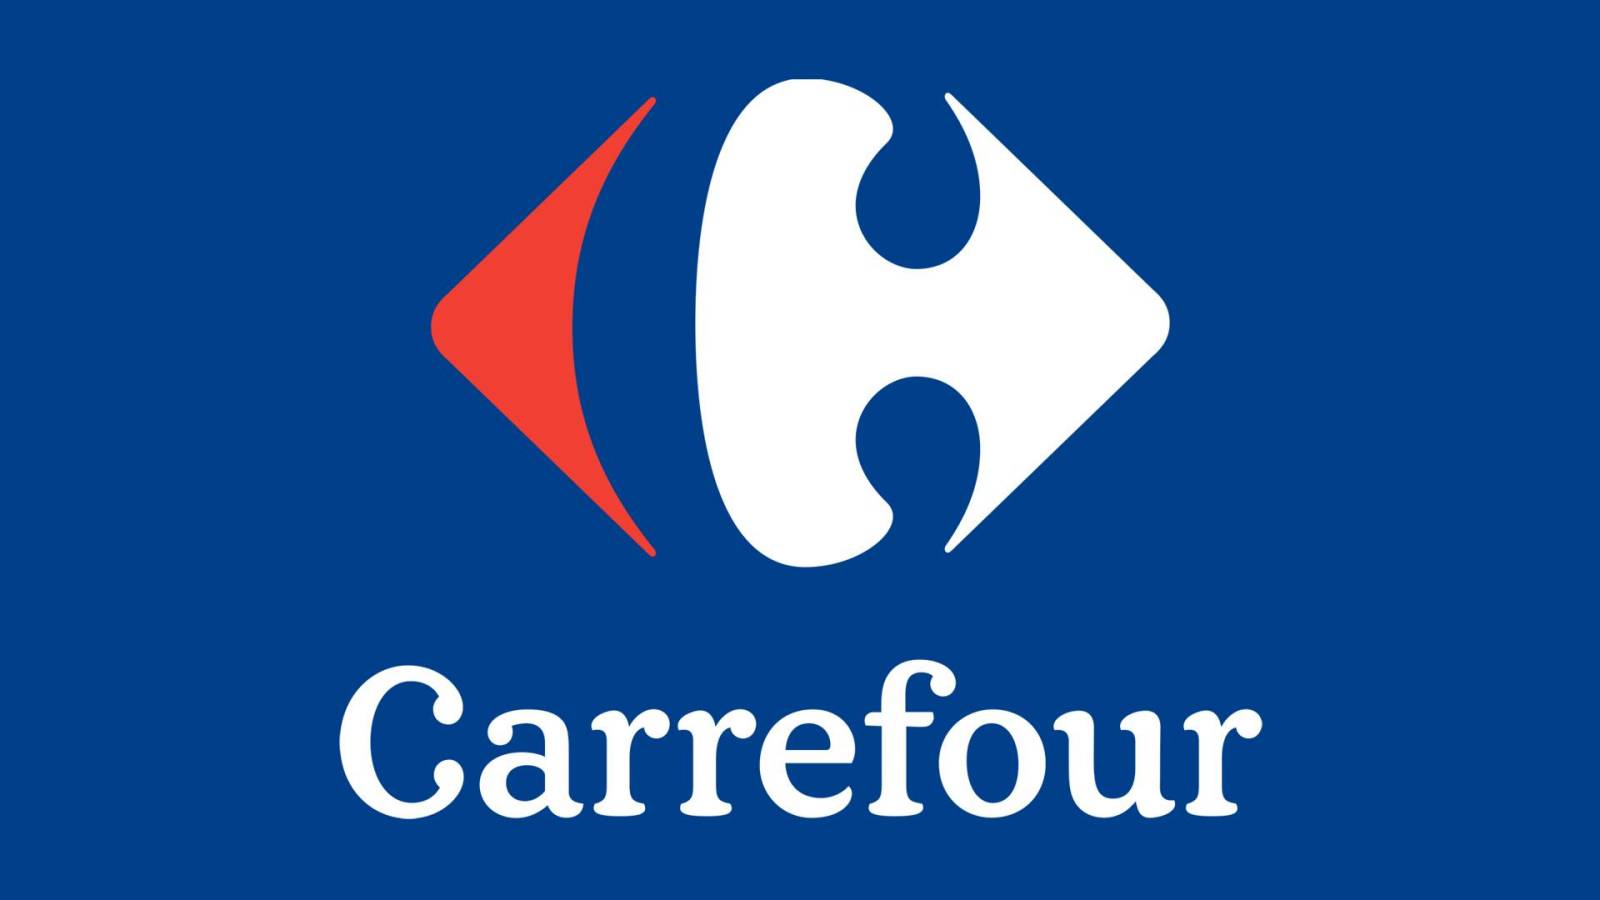 Offerta RIDOTTO a metà prezzo per gli elettrodomestici Carrefour